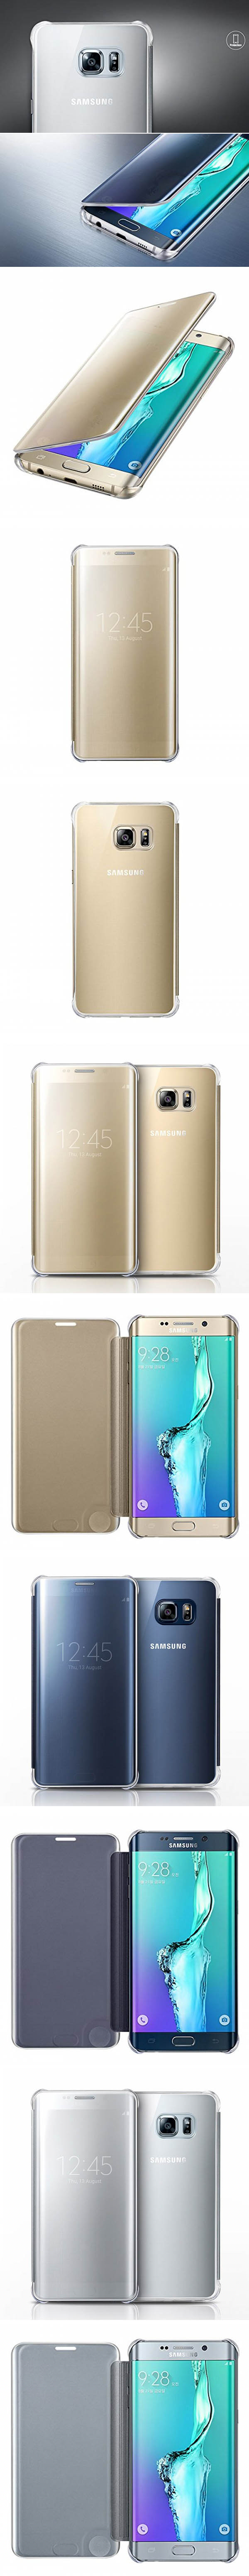 Bao da Galaxy S6 Edge Plus Clear View chính hãng Samsung 33